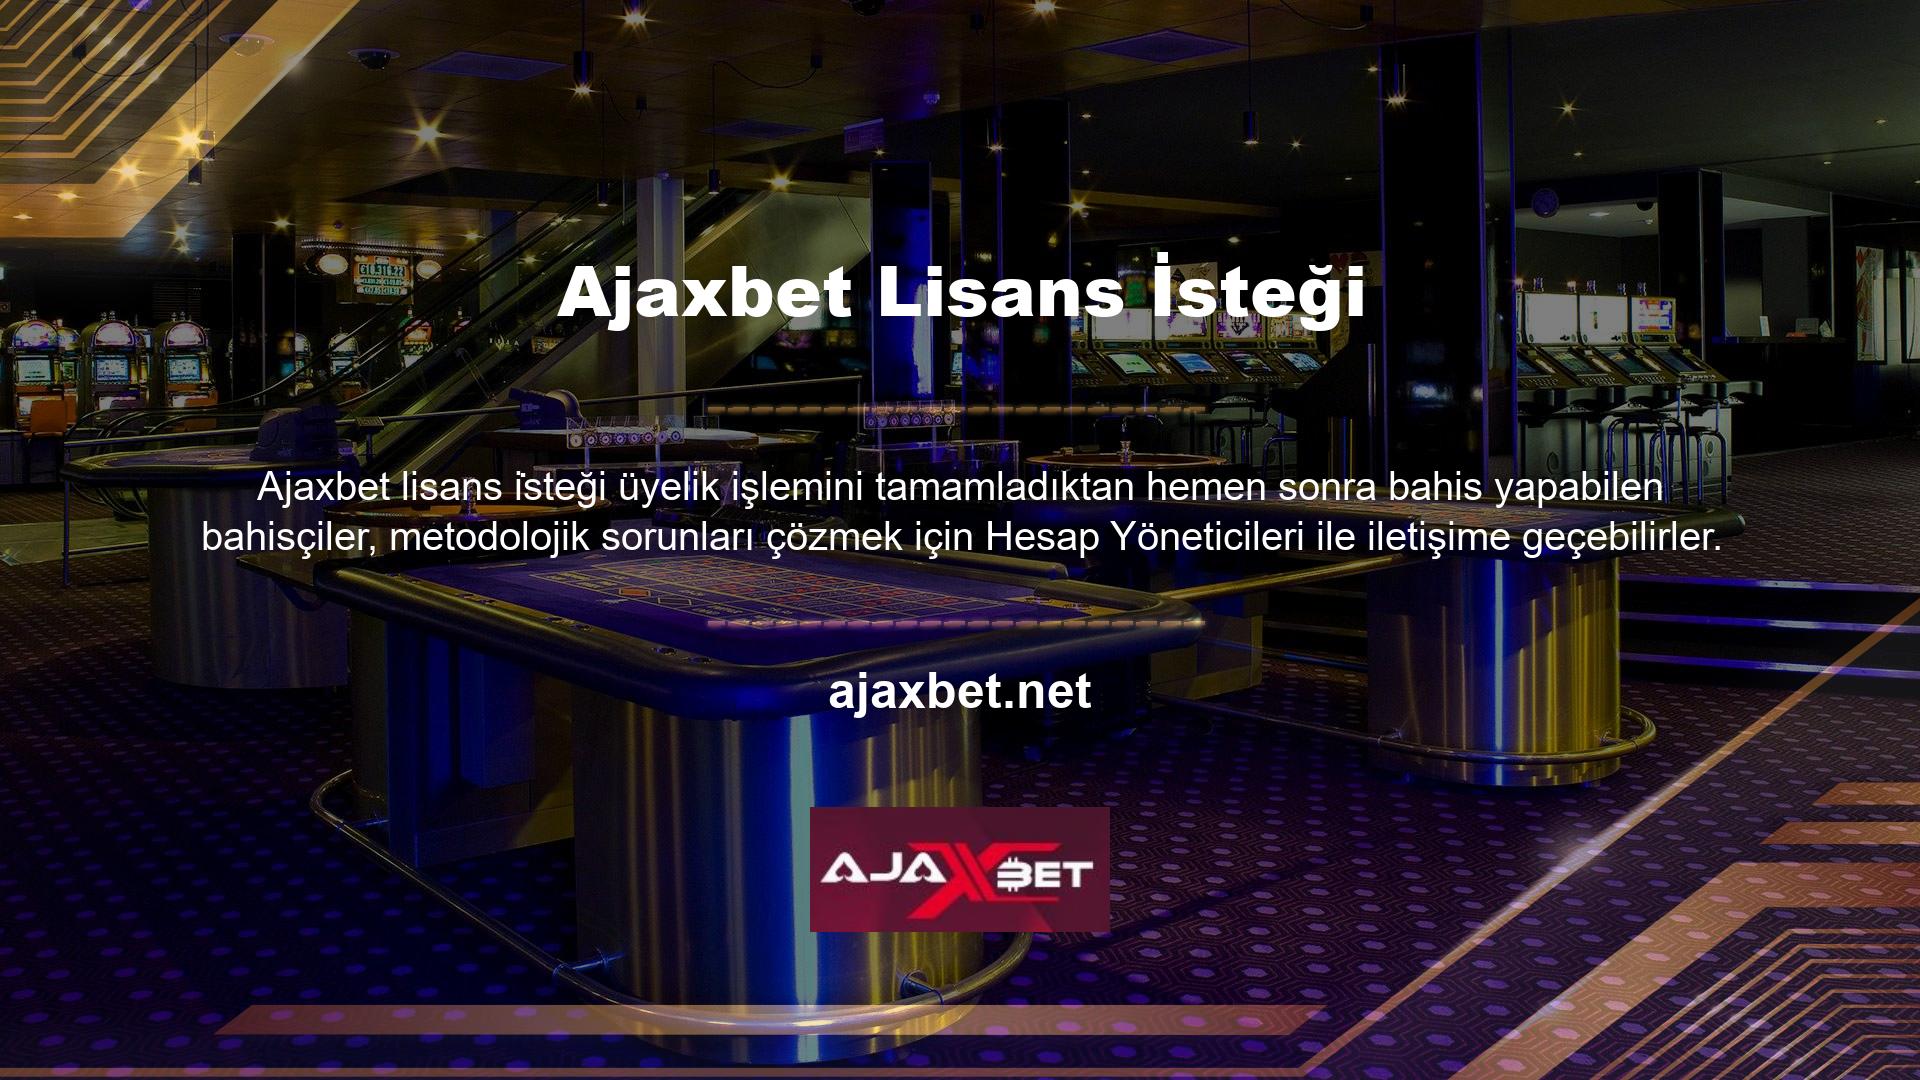 Ajaxbet, lisans bilgilerini paylaşarak katılımcılar arasında şüphe oluşmasını önlemek için güvenlik önlemleri aldı